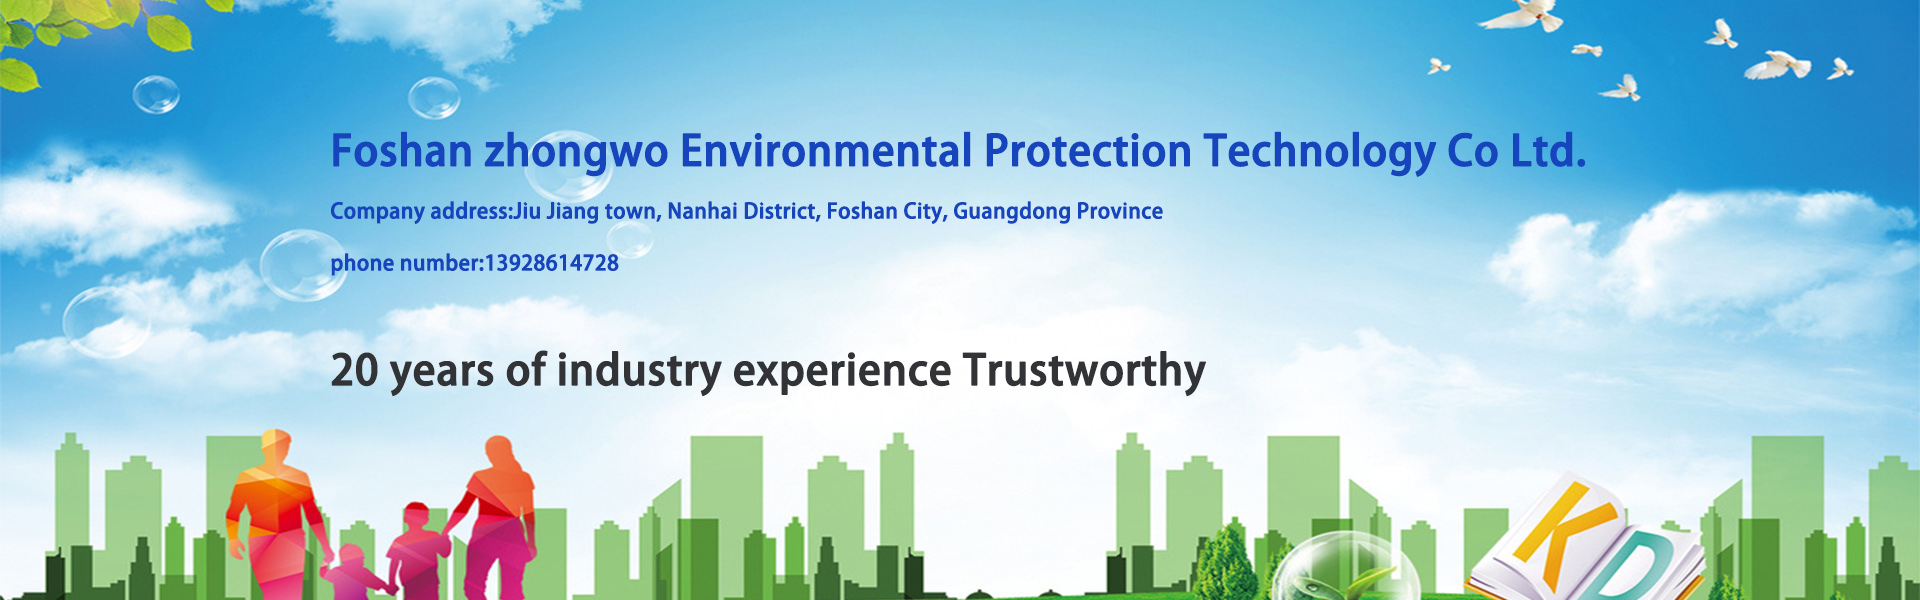 vízkezelő berendezések, víztisztító berendezések, környezetvédelmi berendezések,Foshan zhongwo Environmental Protection Technology Co Ltd.